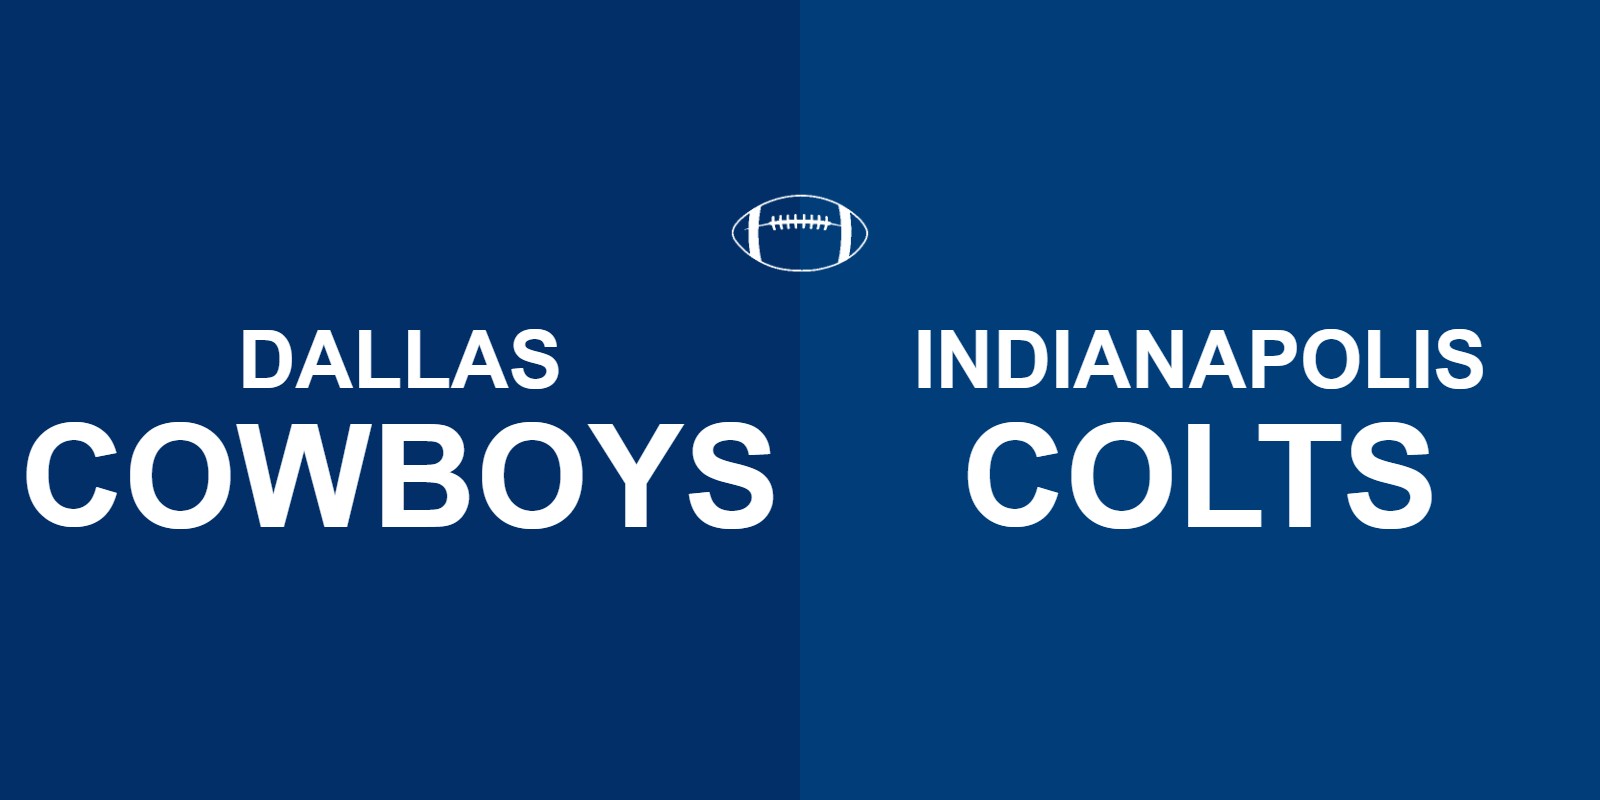 Cowboys vs Colts